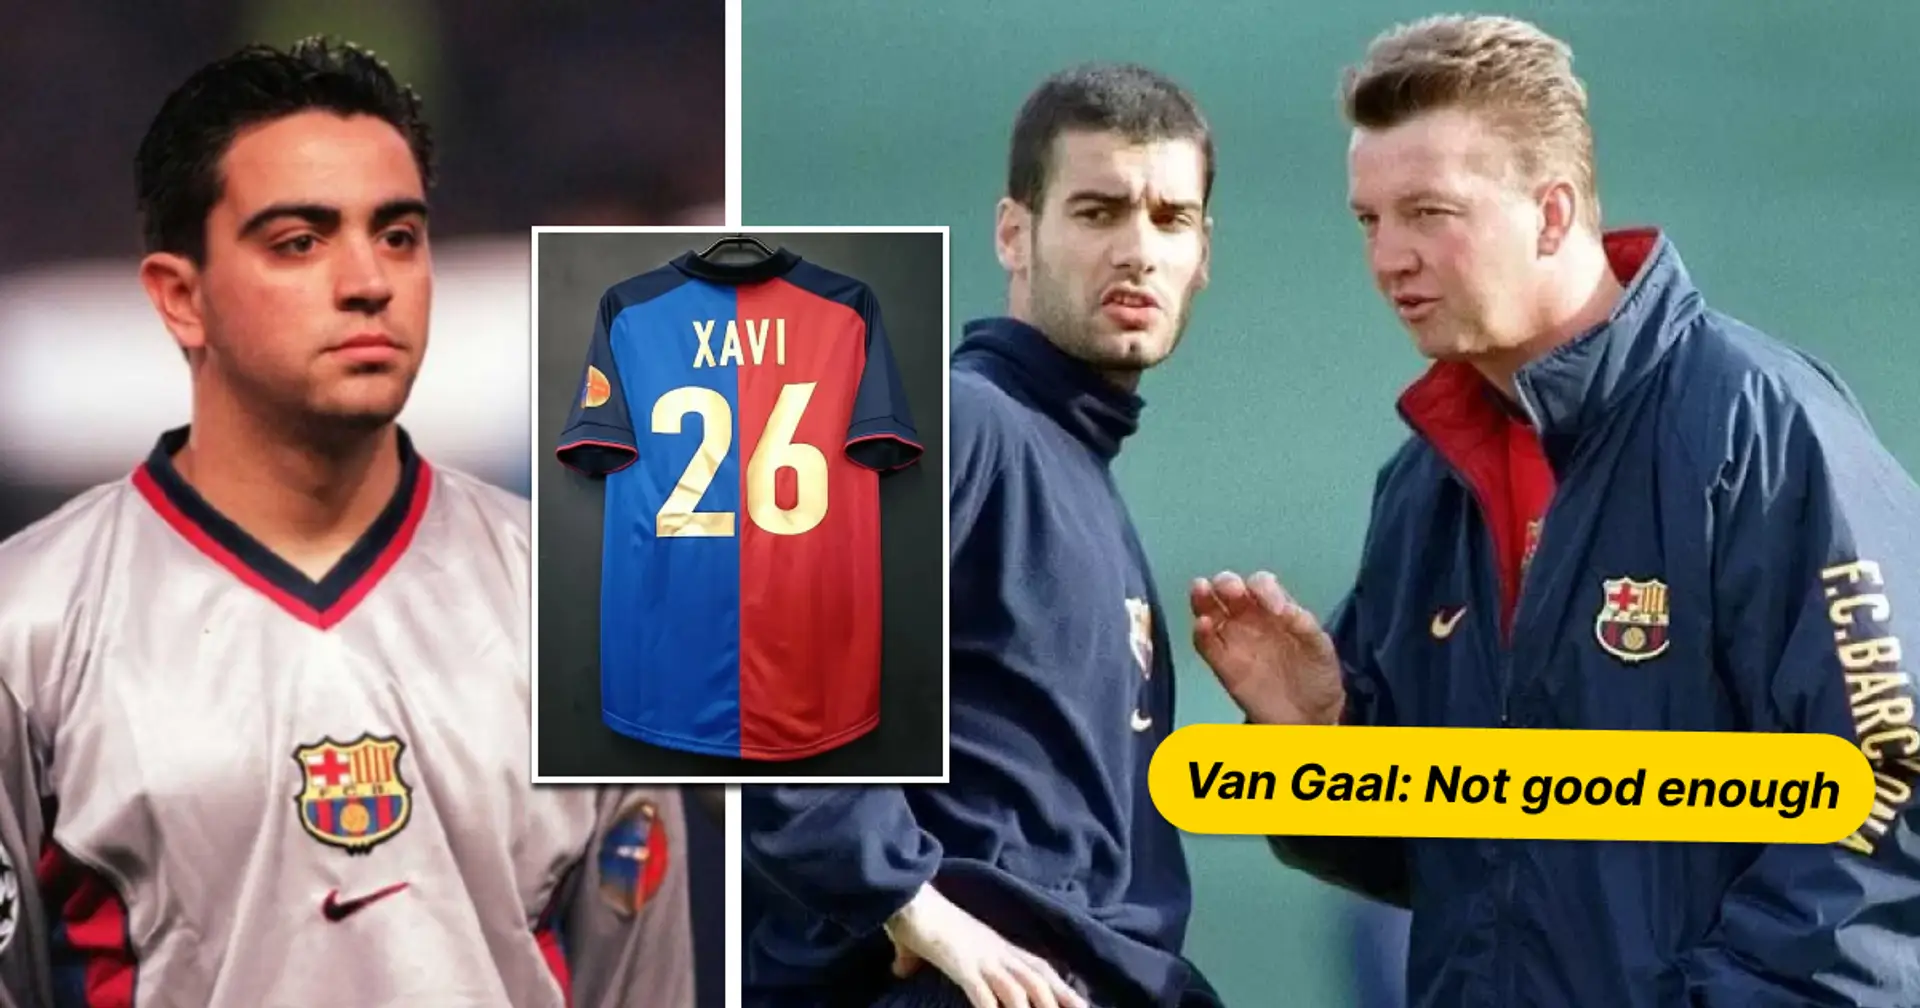 Rappelons comment la mère de Xavi lui a fait changer d'avis sur le fait de quitter le Barça pour un autre grand club d'Europe